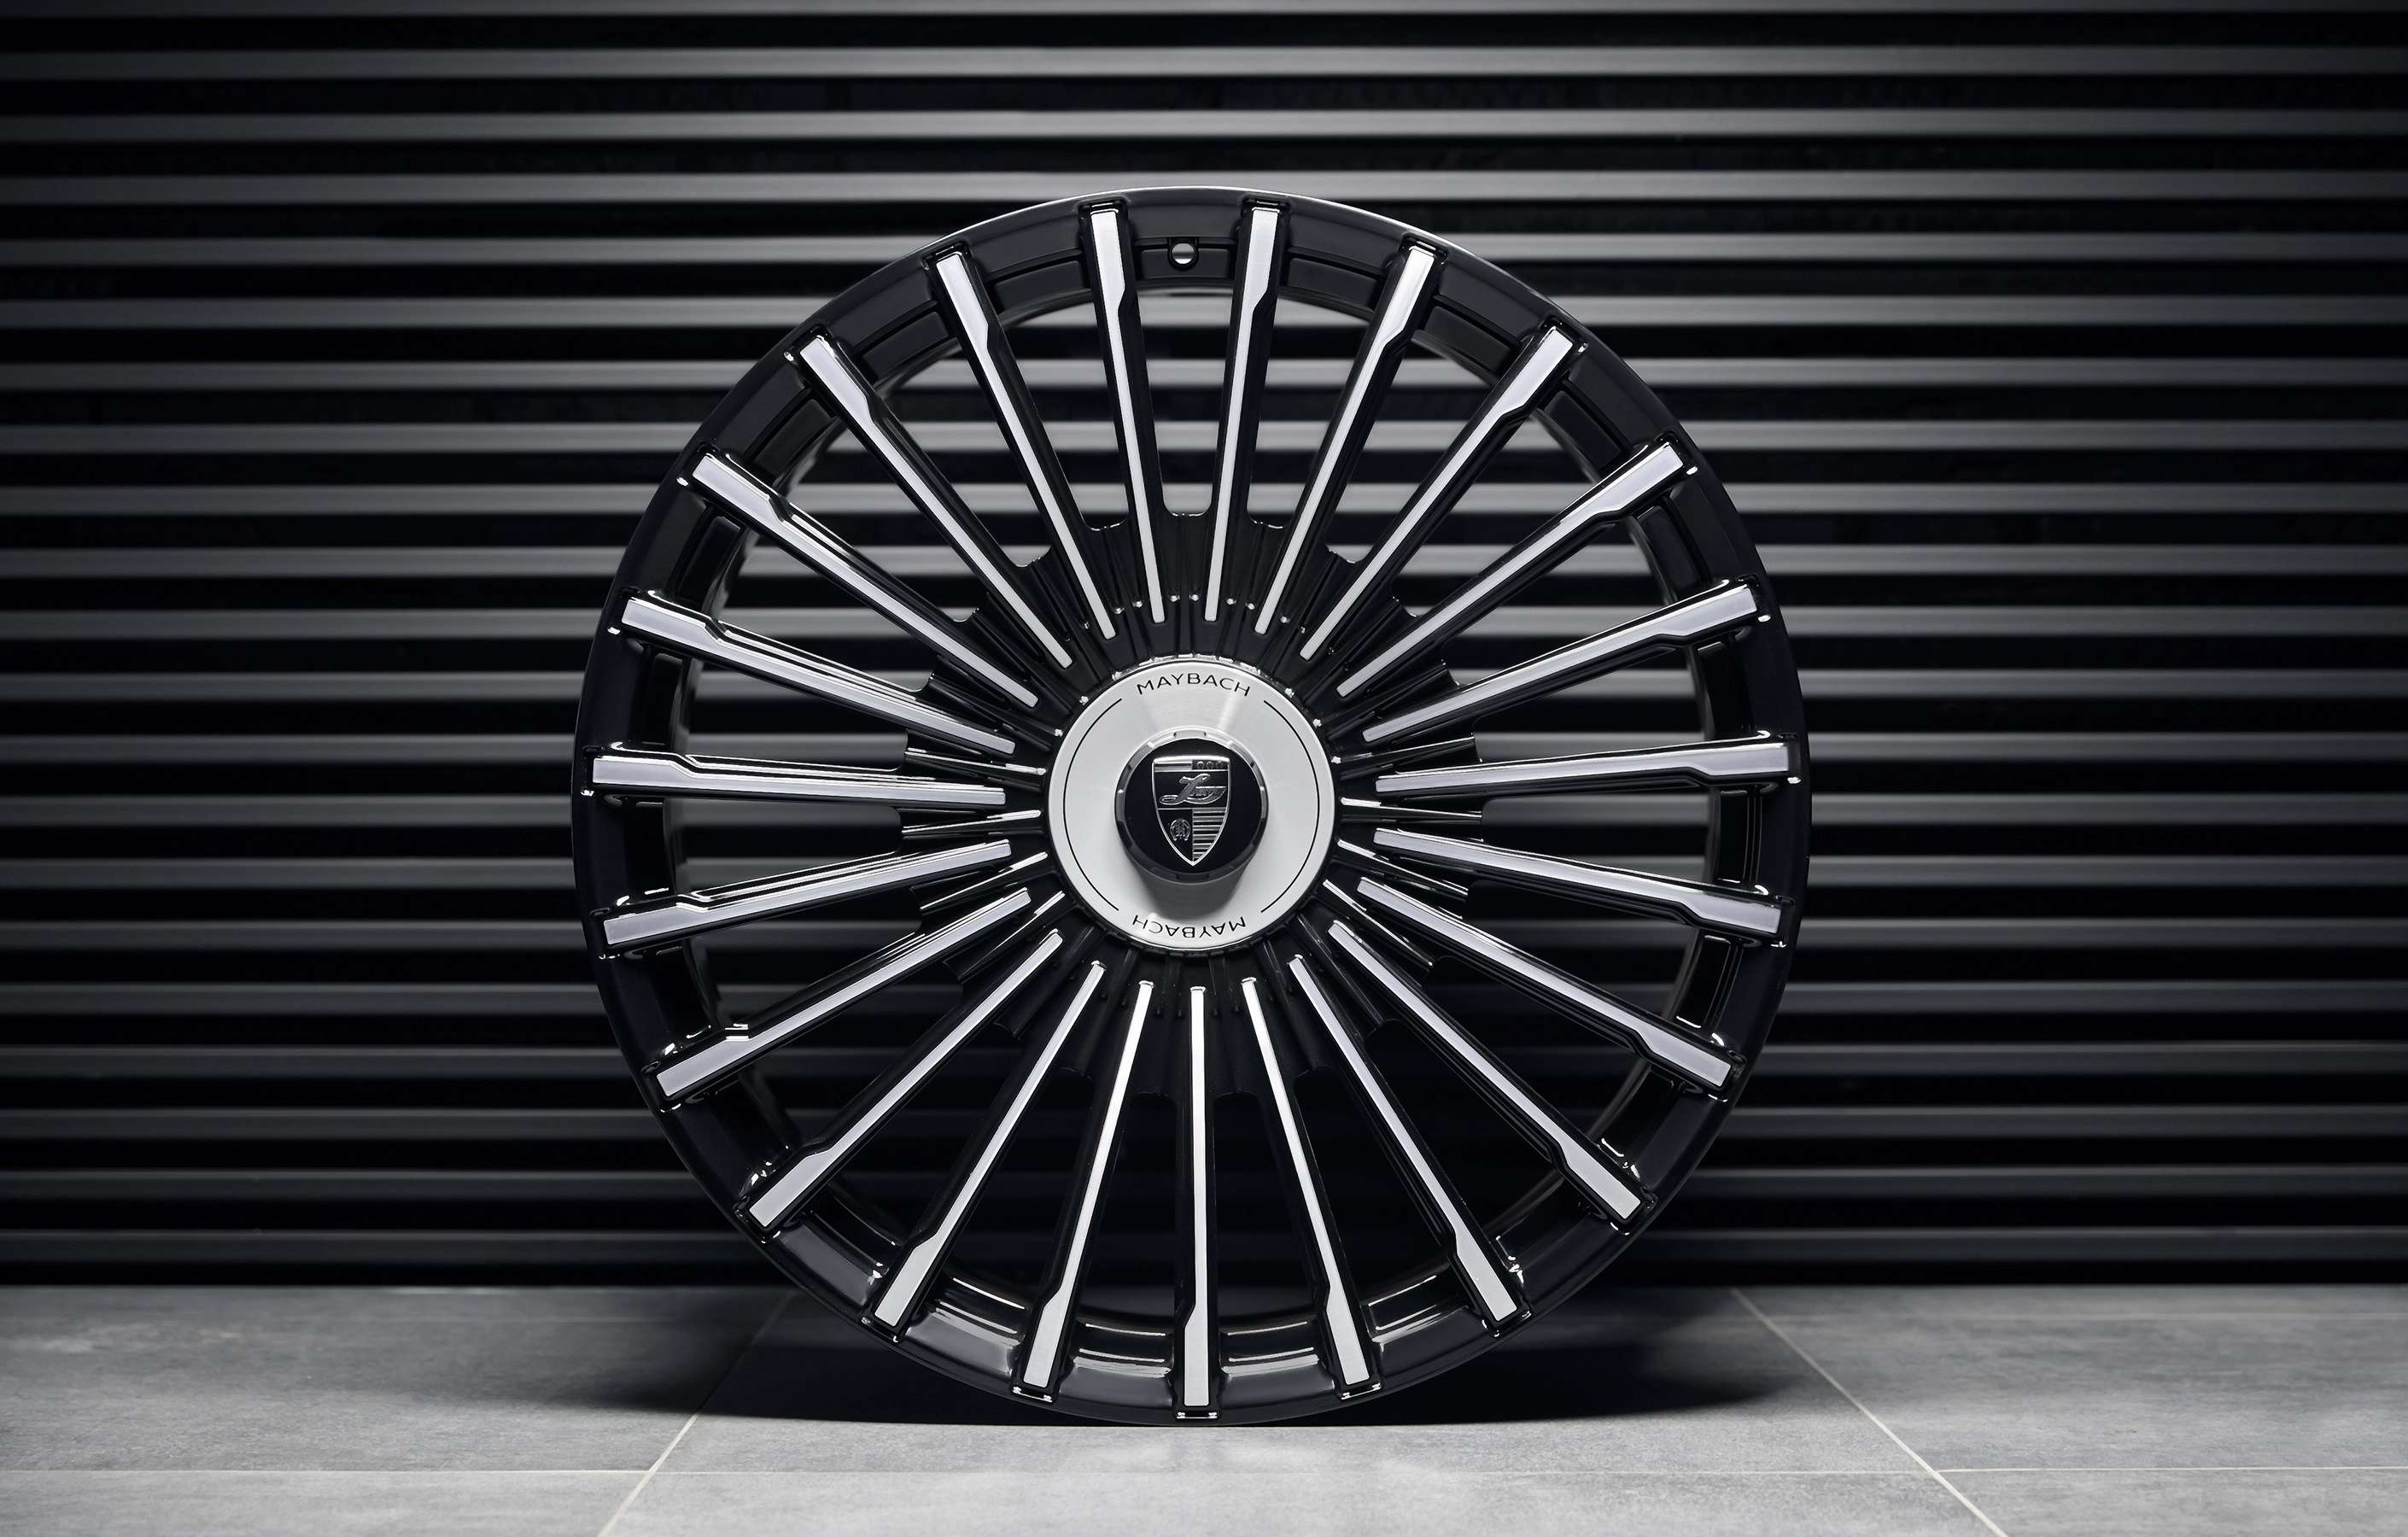 Комплект кованых колес радиус 24 дюйма для Мерседес Майбах GLS 600 X167 4MATIC